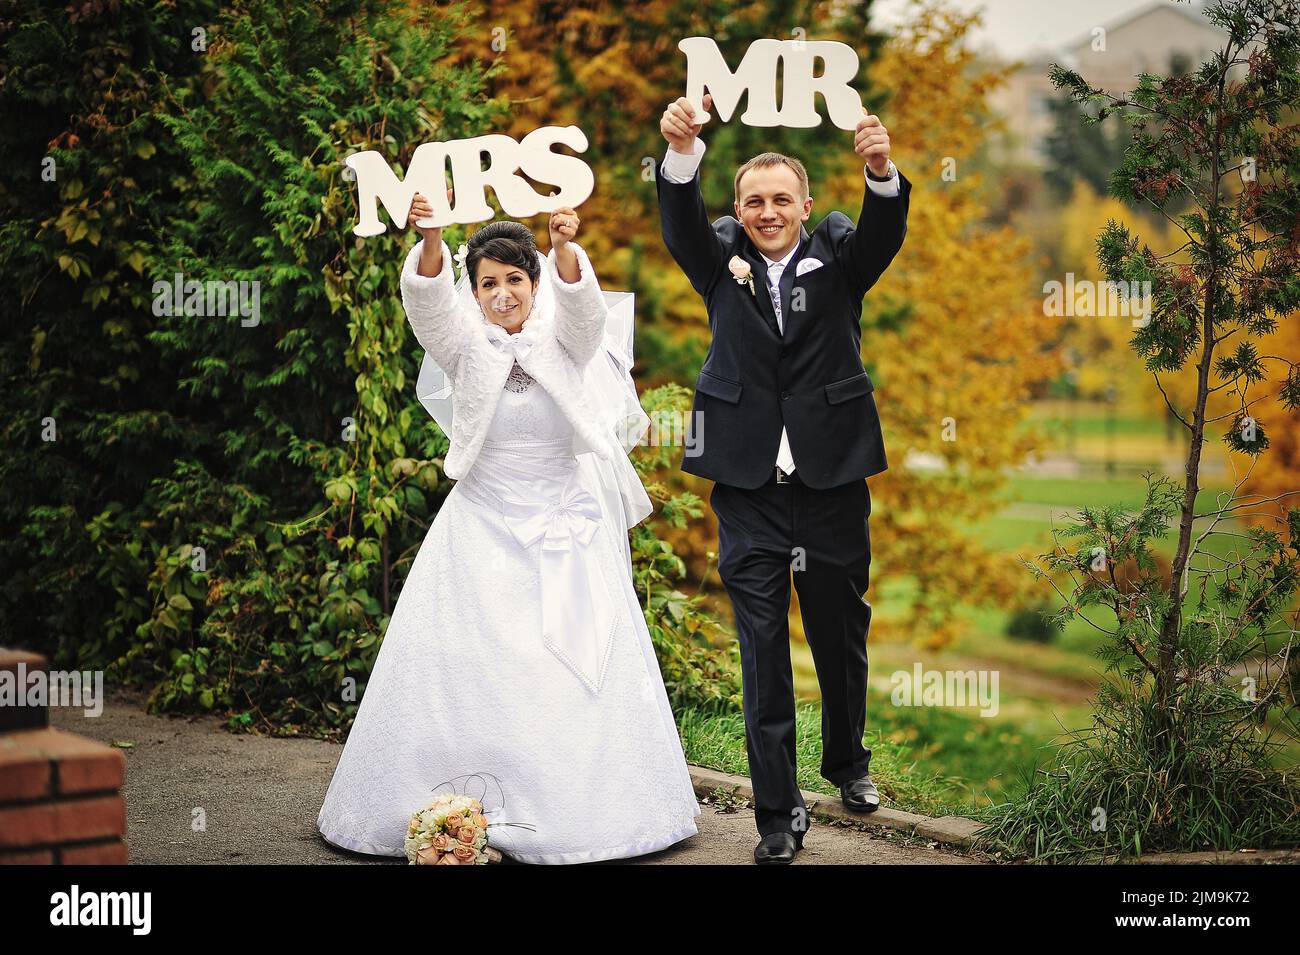 Joyeux mariage en automne avec le signe mme mr Banque D'Images